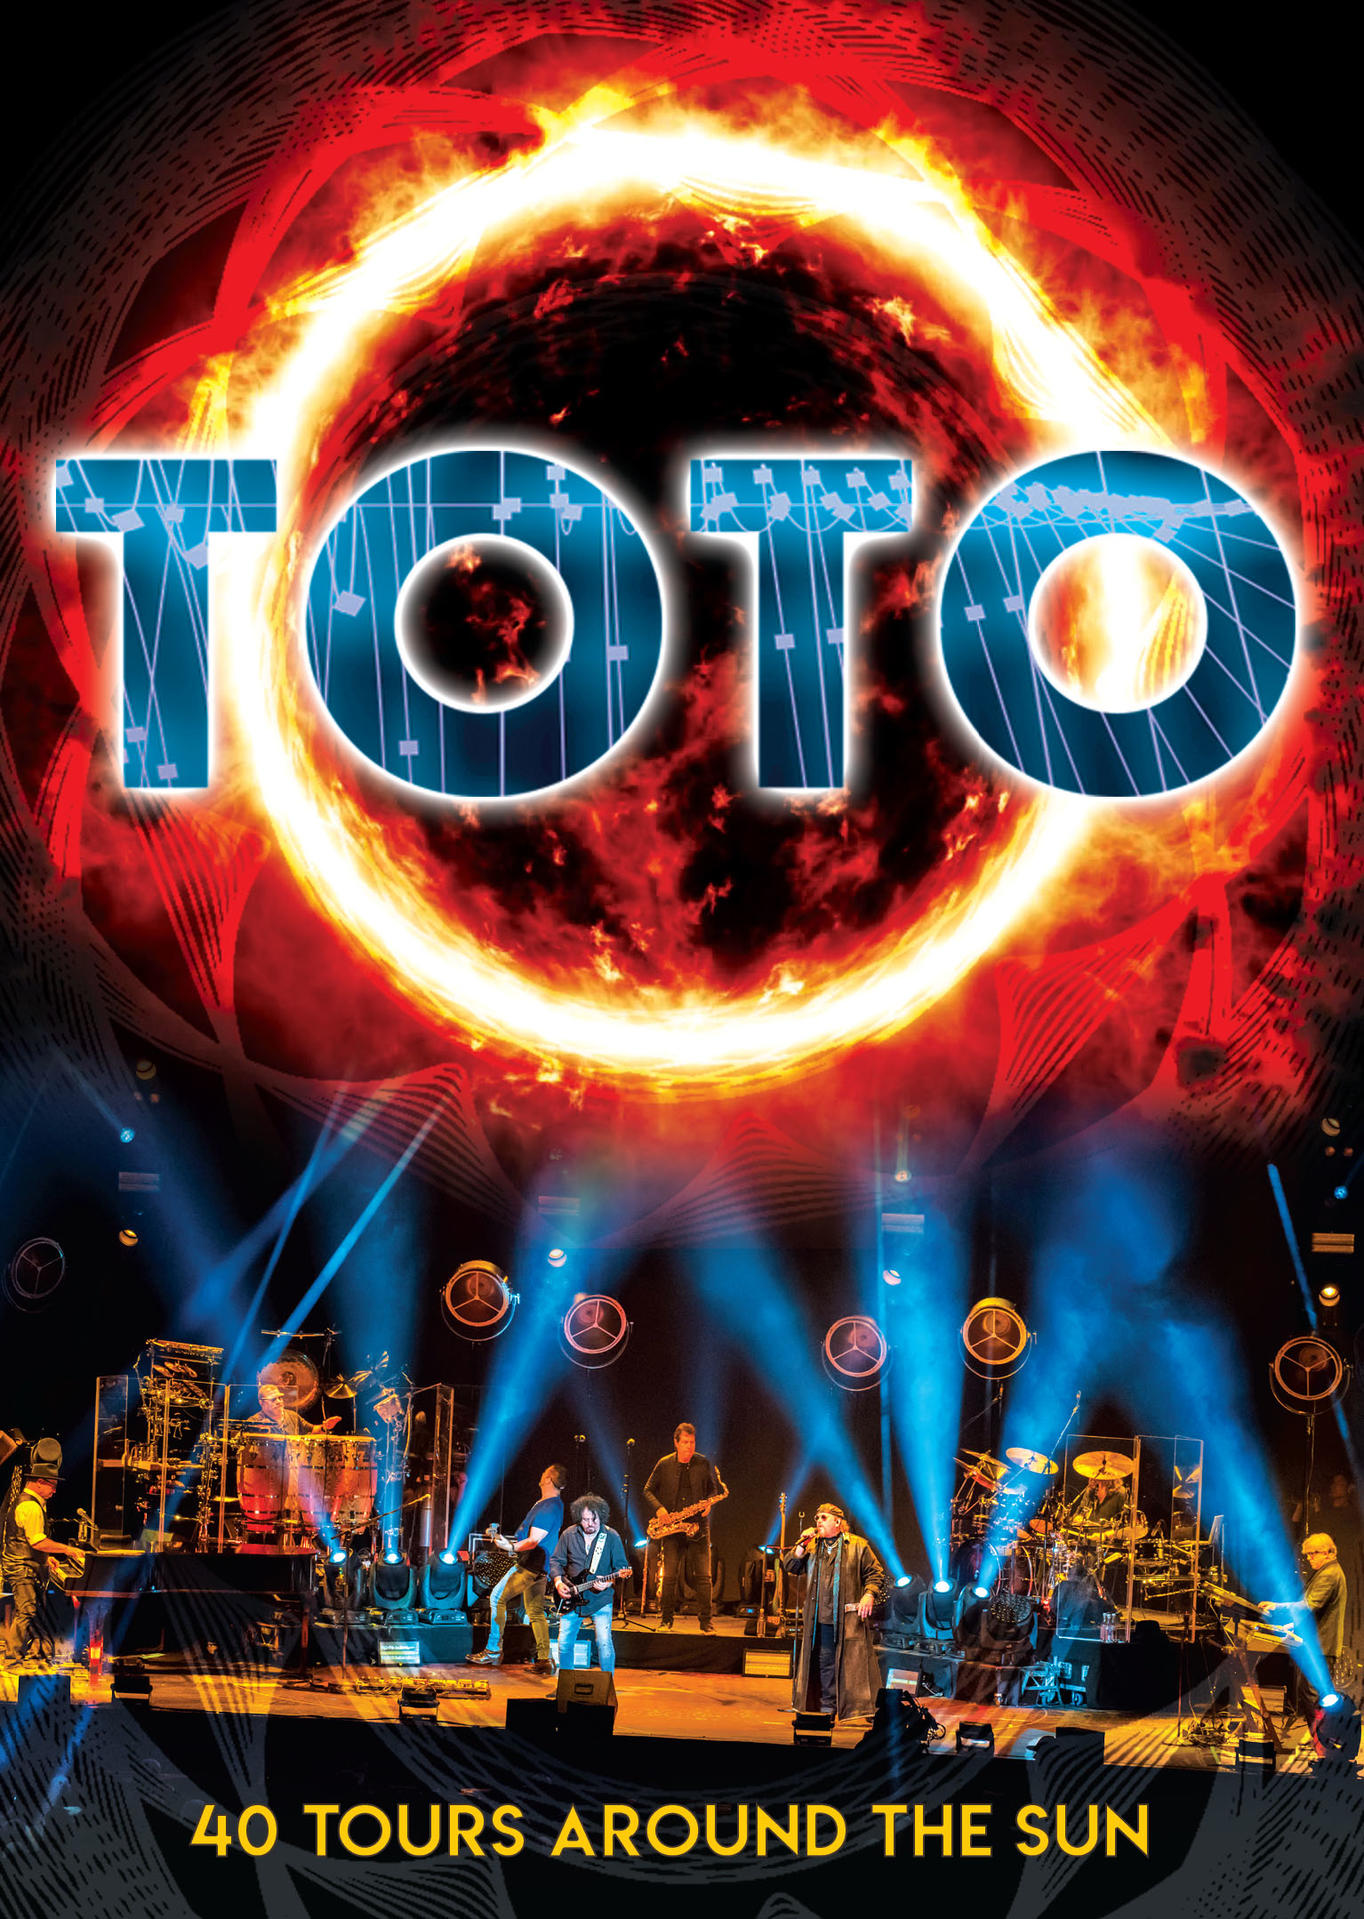 AROUND TOURS (DVD) - THE 40 SUN - Toto